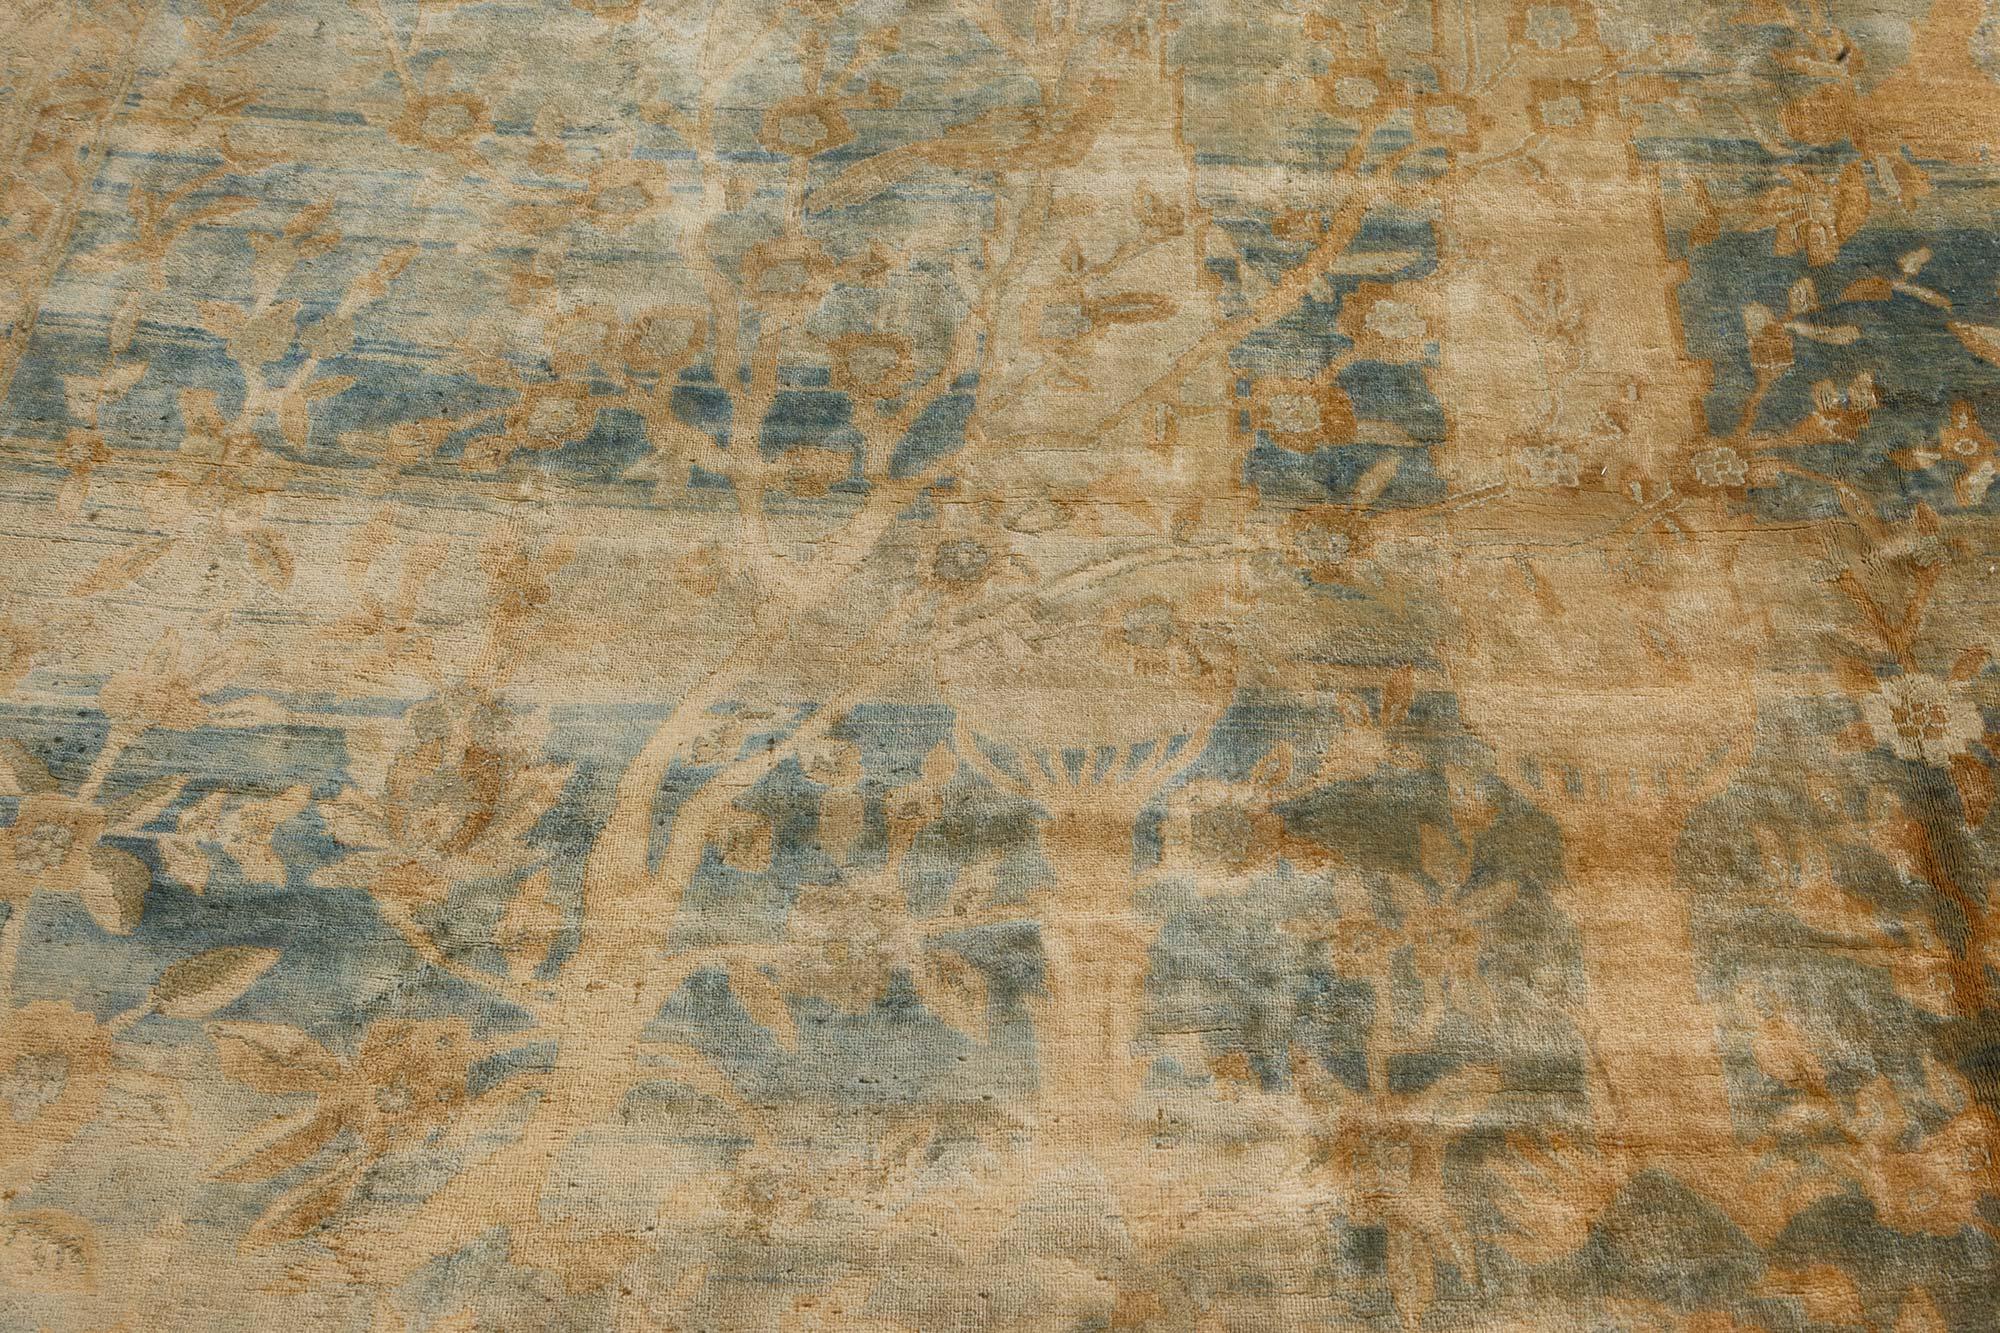 Oversized antique Indian rug
Size: 15'7